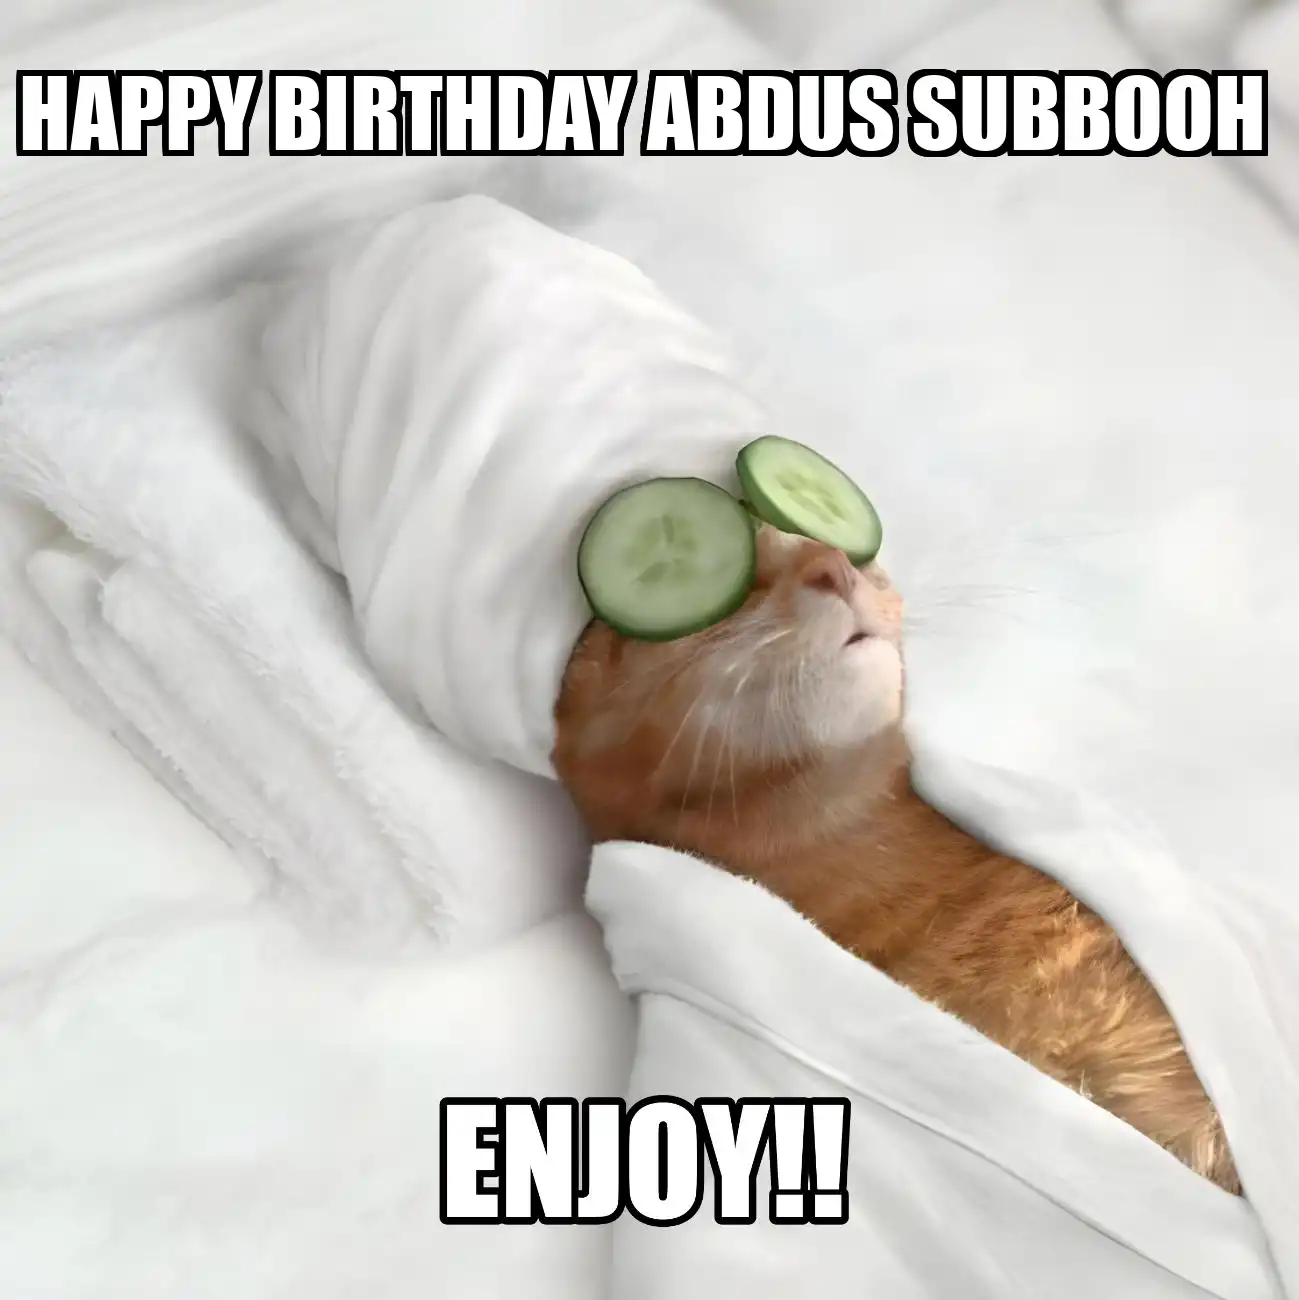 Happy Birthday Abdus Subbooh Enjoy Cat Meme